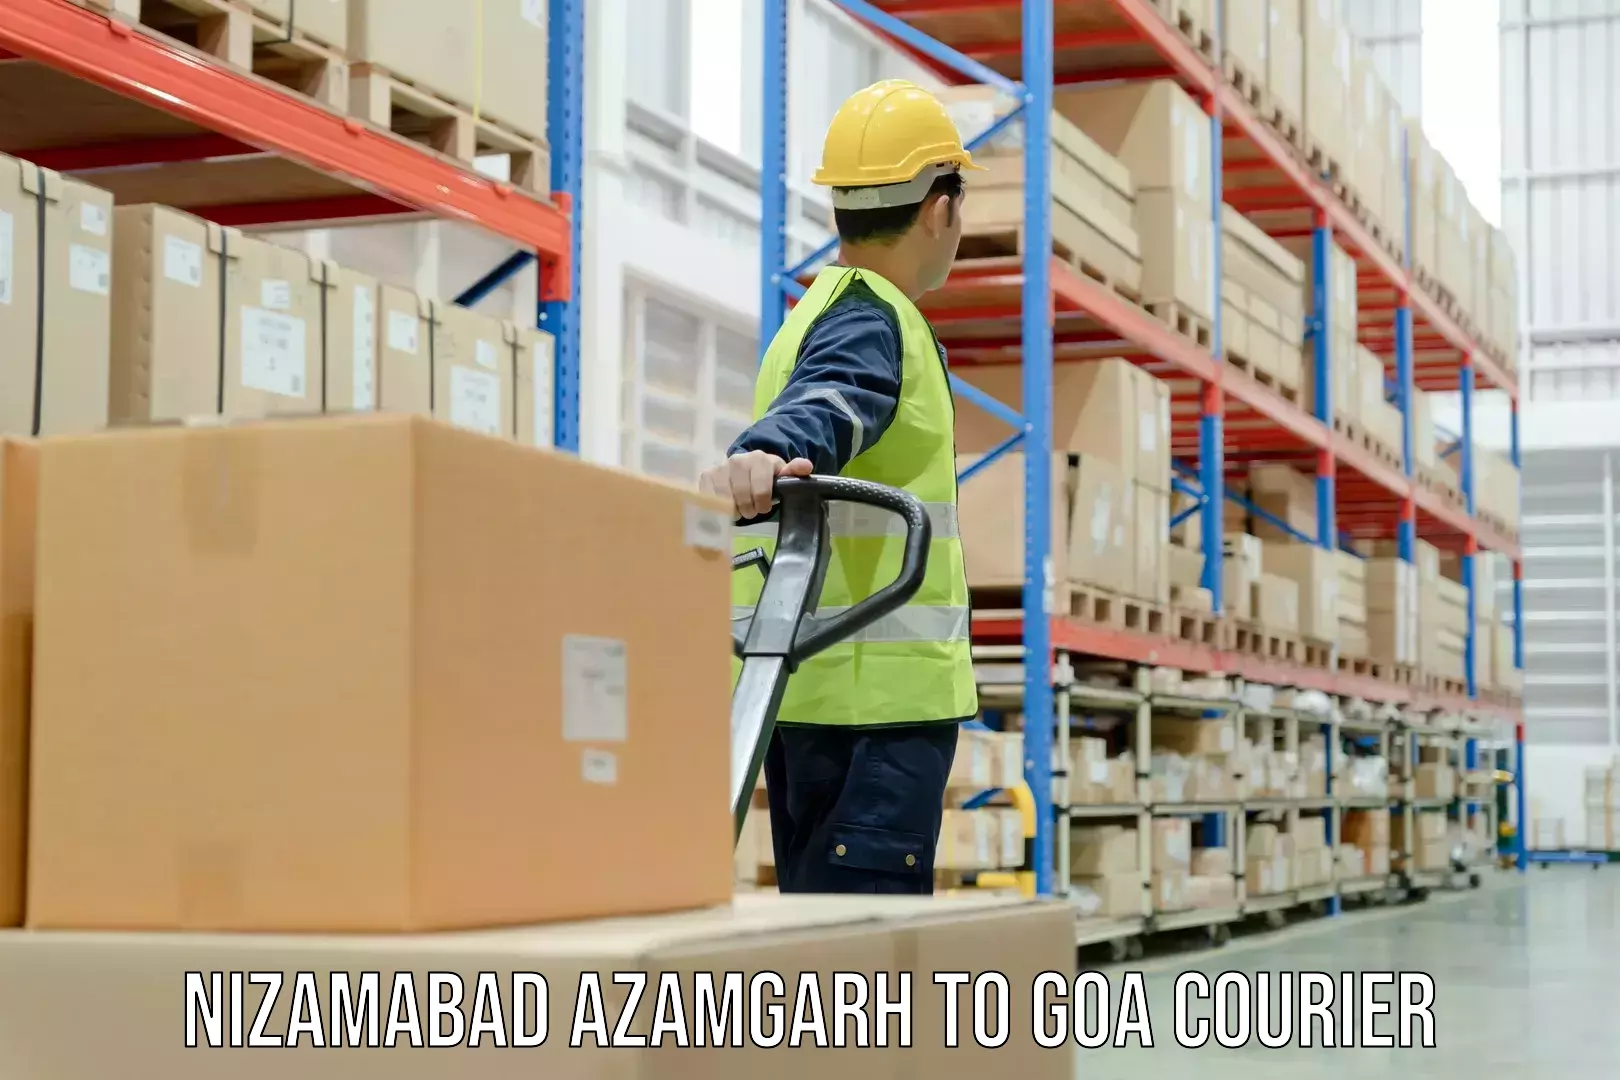 User-friendly courier app Nizamabad Azamgarh to IIT Goa